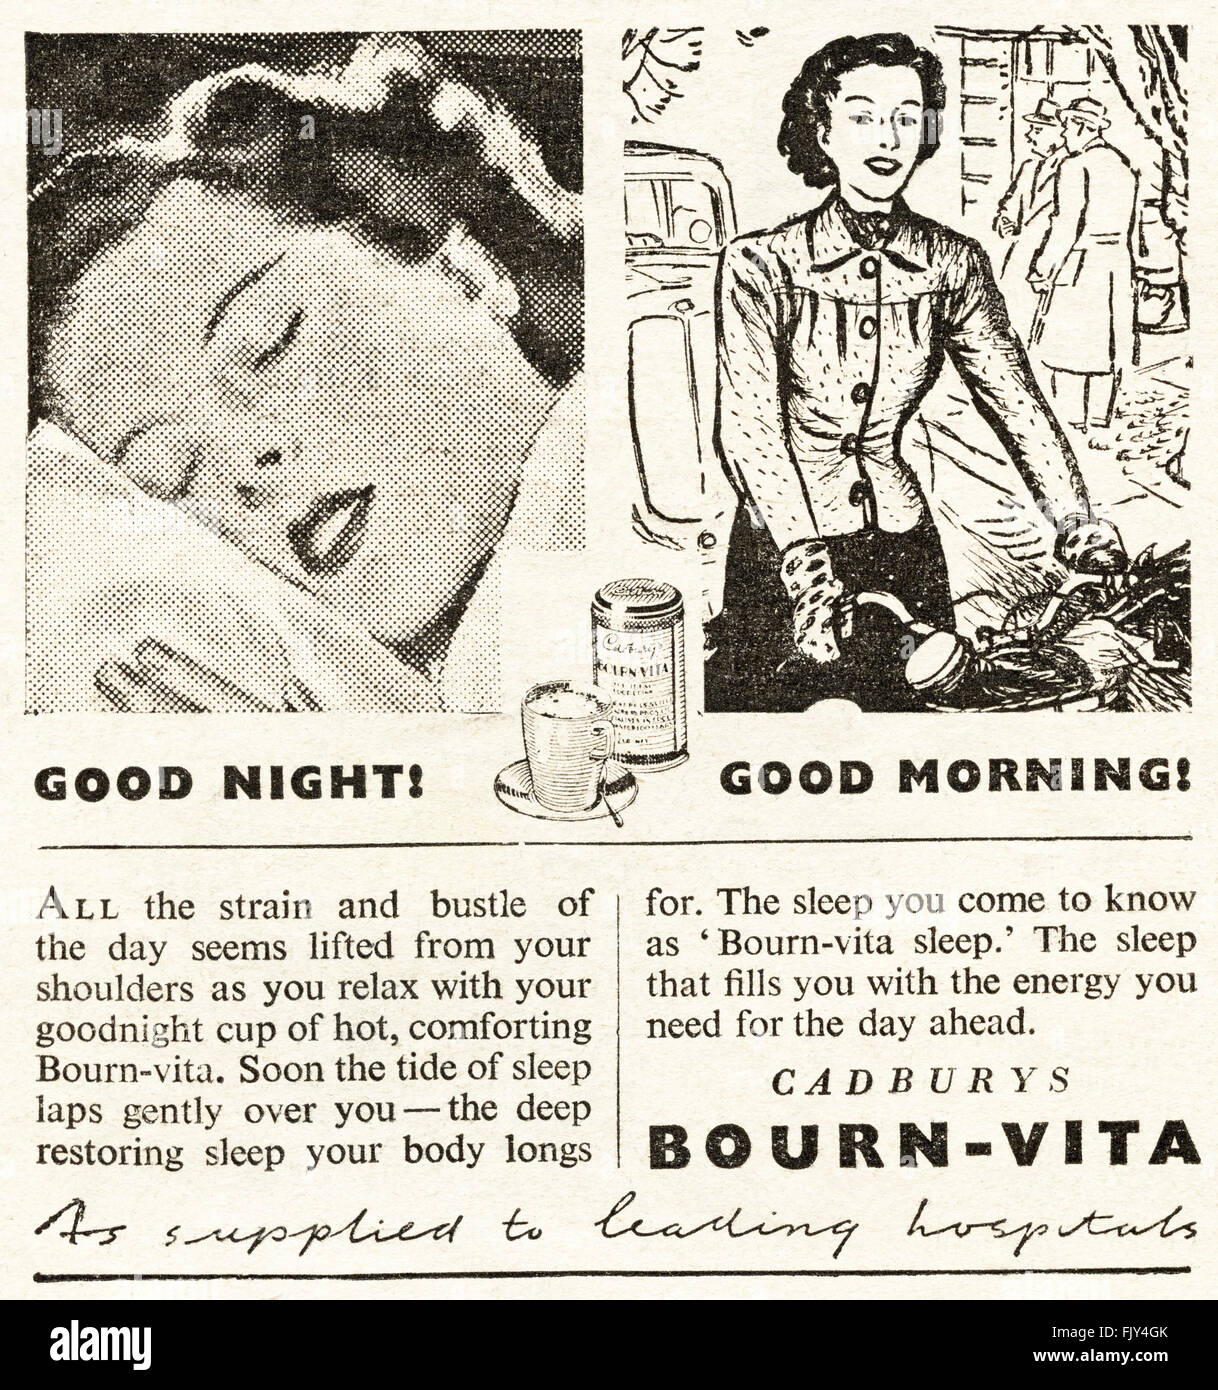 Vintage originale annuncio da 1940s. Annuncio datato 1947 pubblicità CADBURY'S BOURNVITA cioccolato drink di malto. Foto Stock